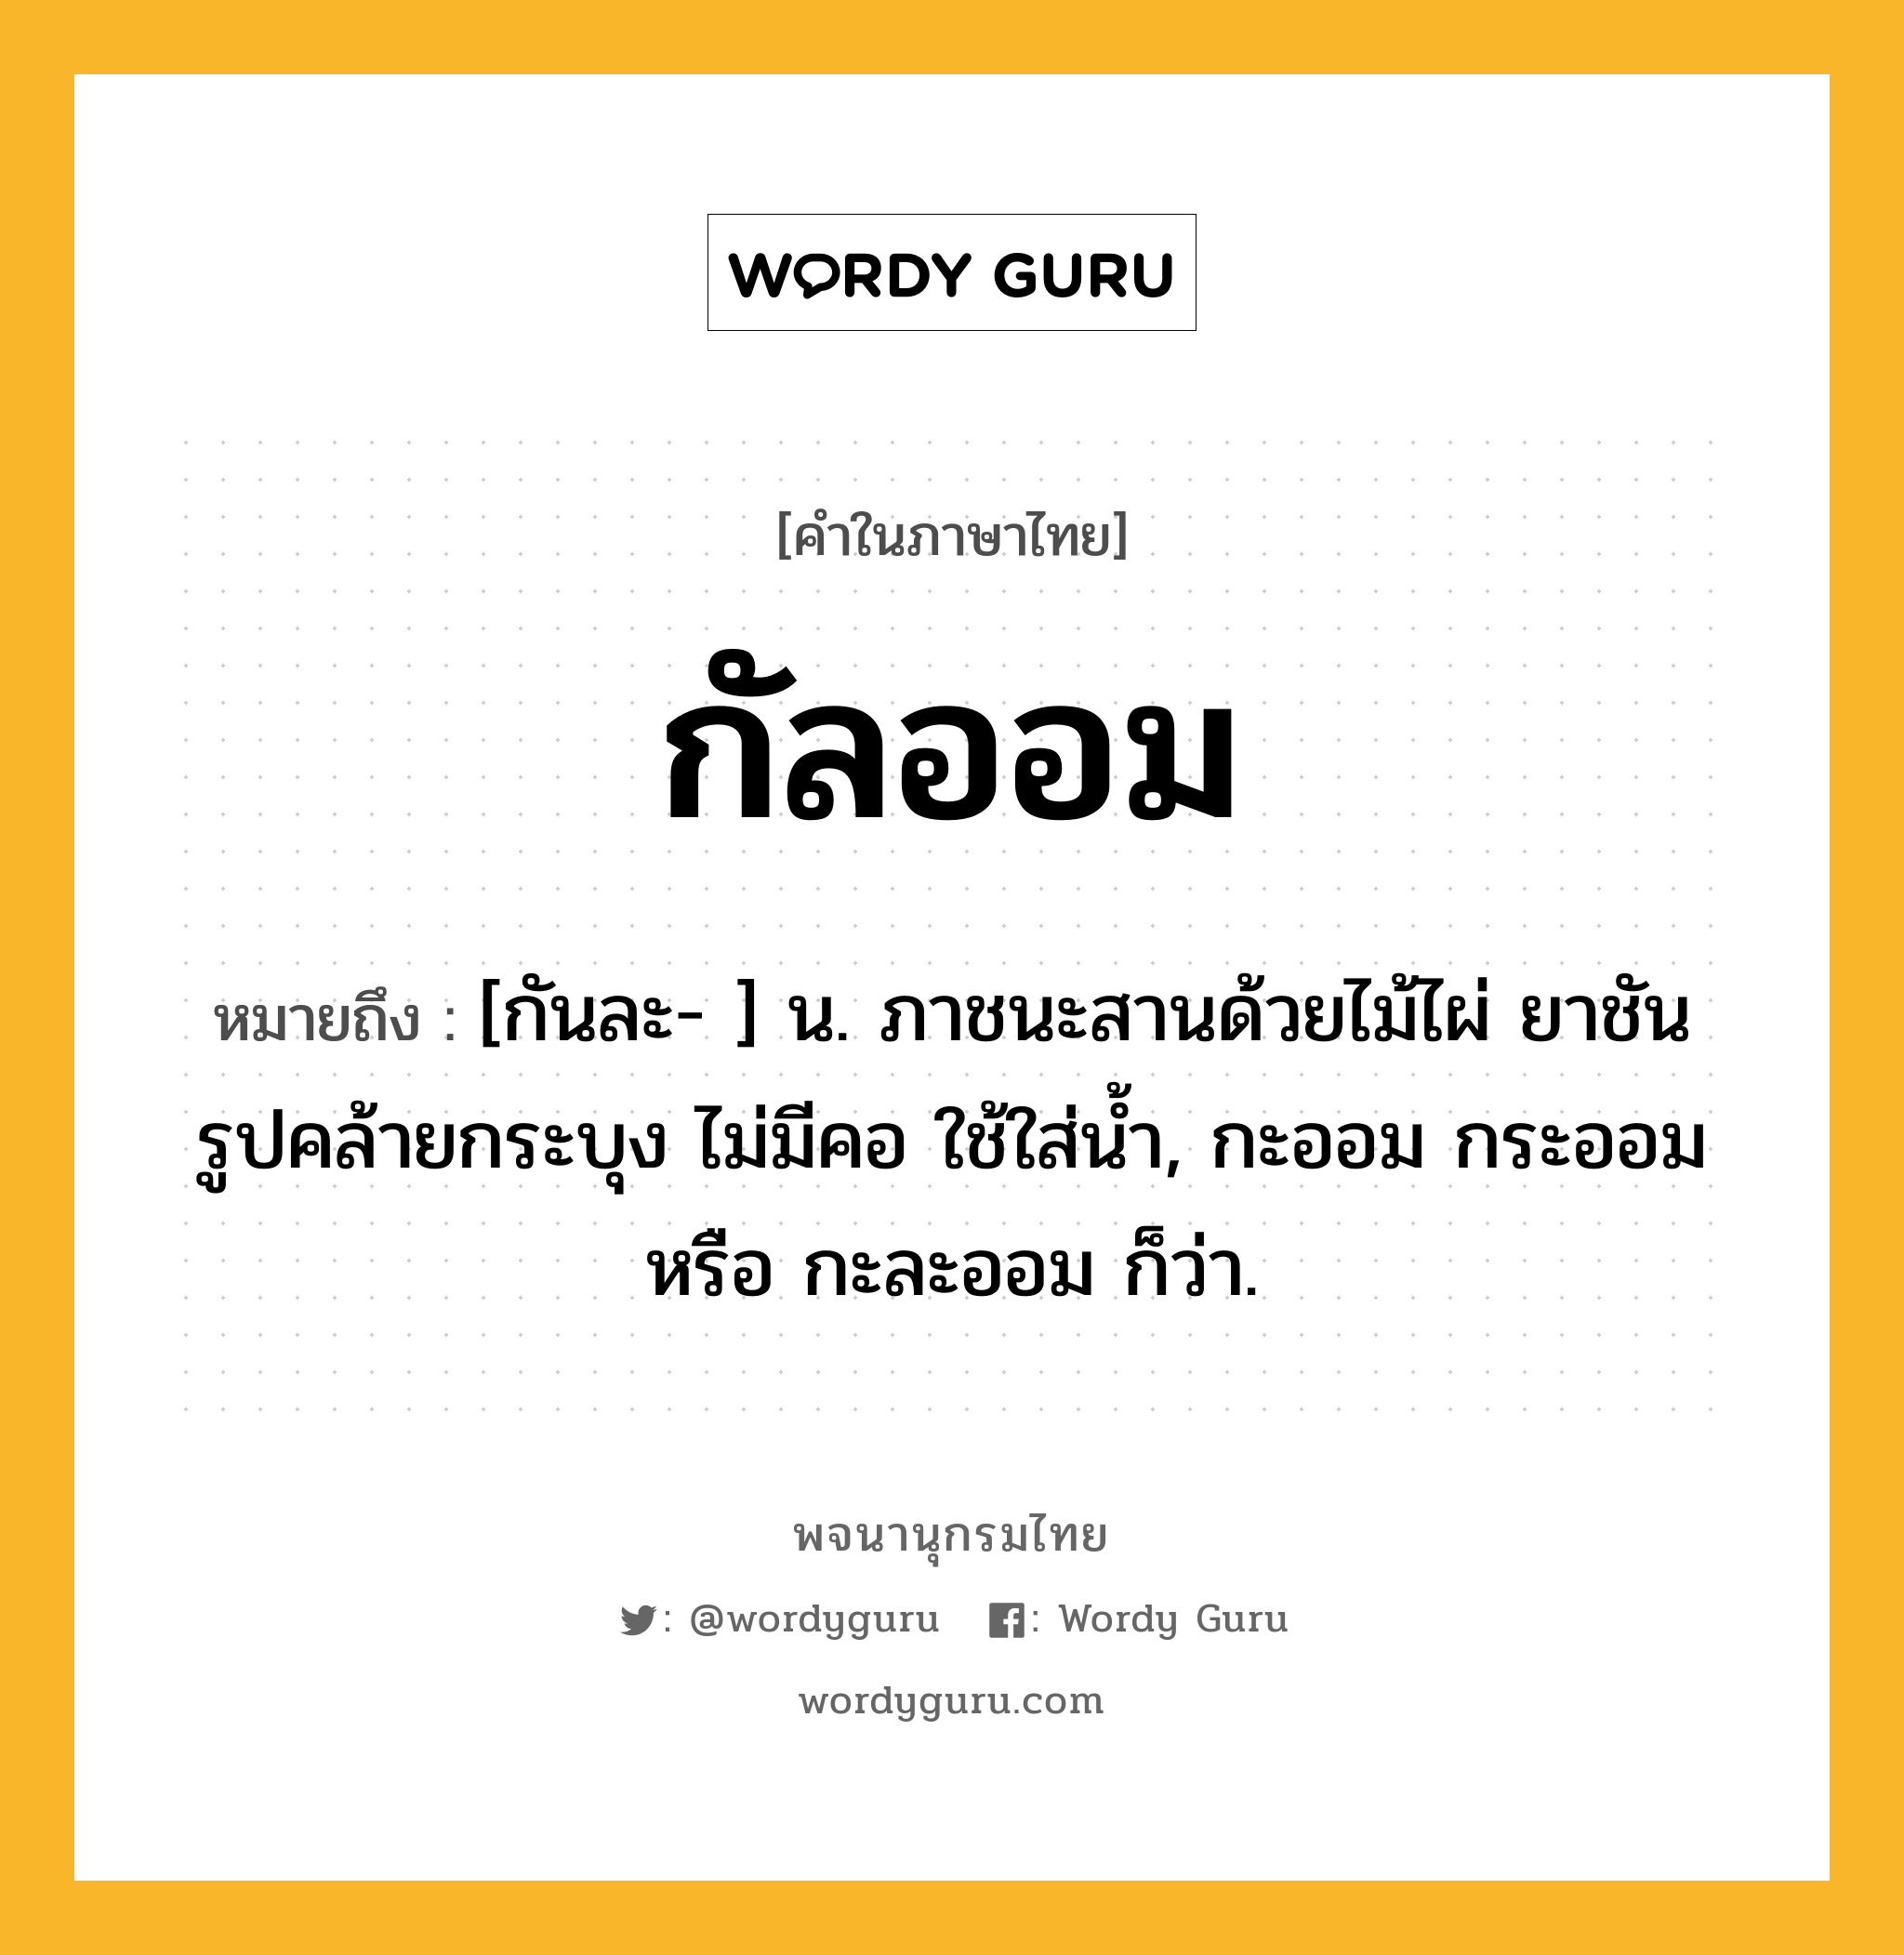 กัลออม หมายถึงอะไร?, คำในภาษาไทย กัลออม หมายถึง [กันละ- ] น. ภาชนะสานด้วยไม้ไผ่ ยาชัน รูปคล้ายกระบุง ไม่มีคอ ใช้ใส่น้ำ, กะออม กระออม หรือ กะละออม ก็ว่า.